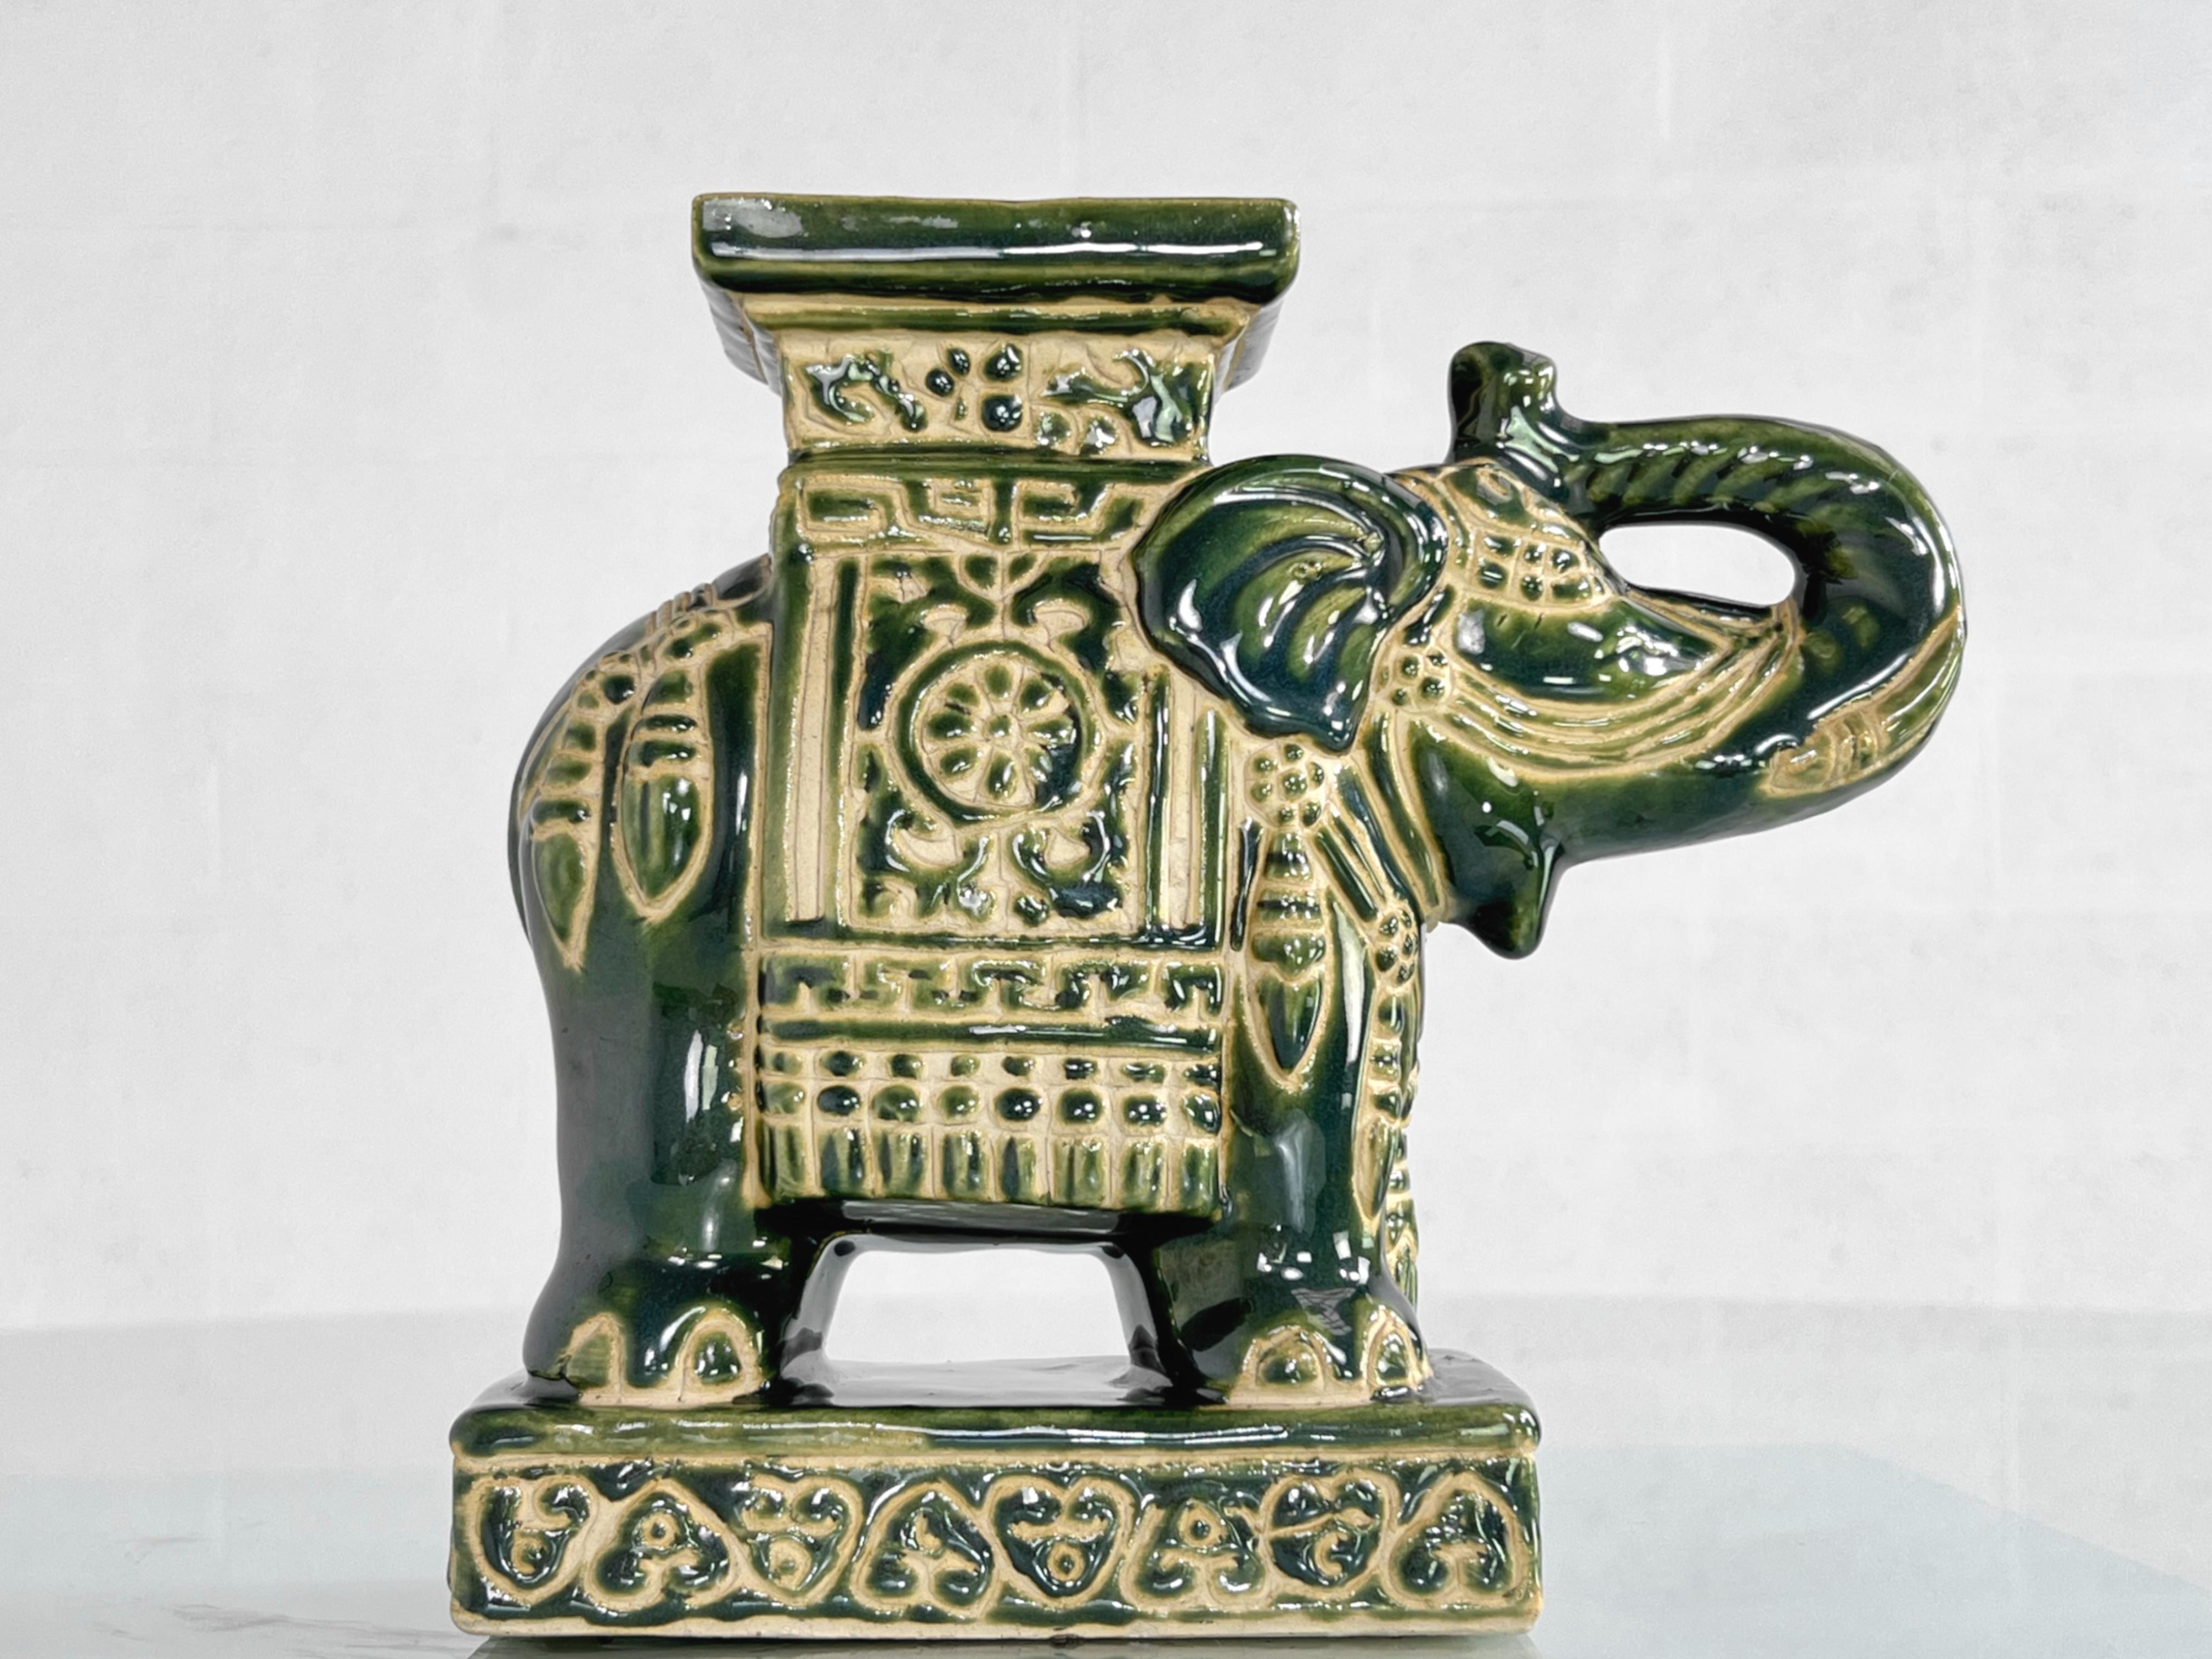 1960s - 1970 Vintage Ceramic Sculpture Elephant shaped in green colors (Sculpture en céramique en forme d'éléphant aux couleurs vertes)